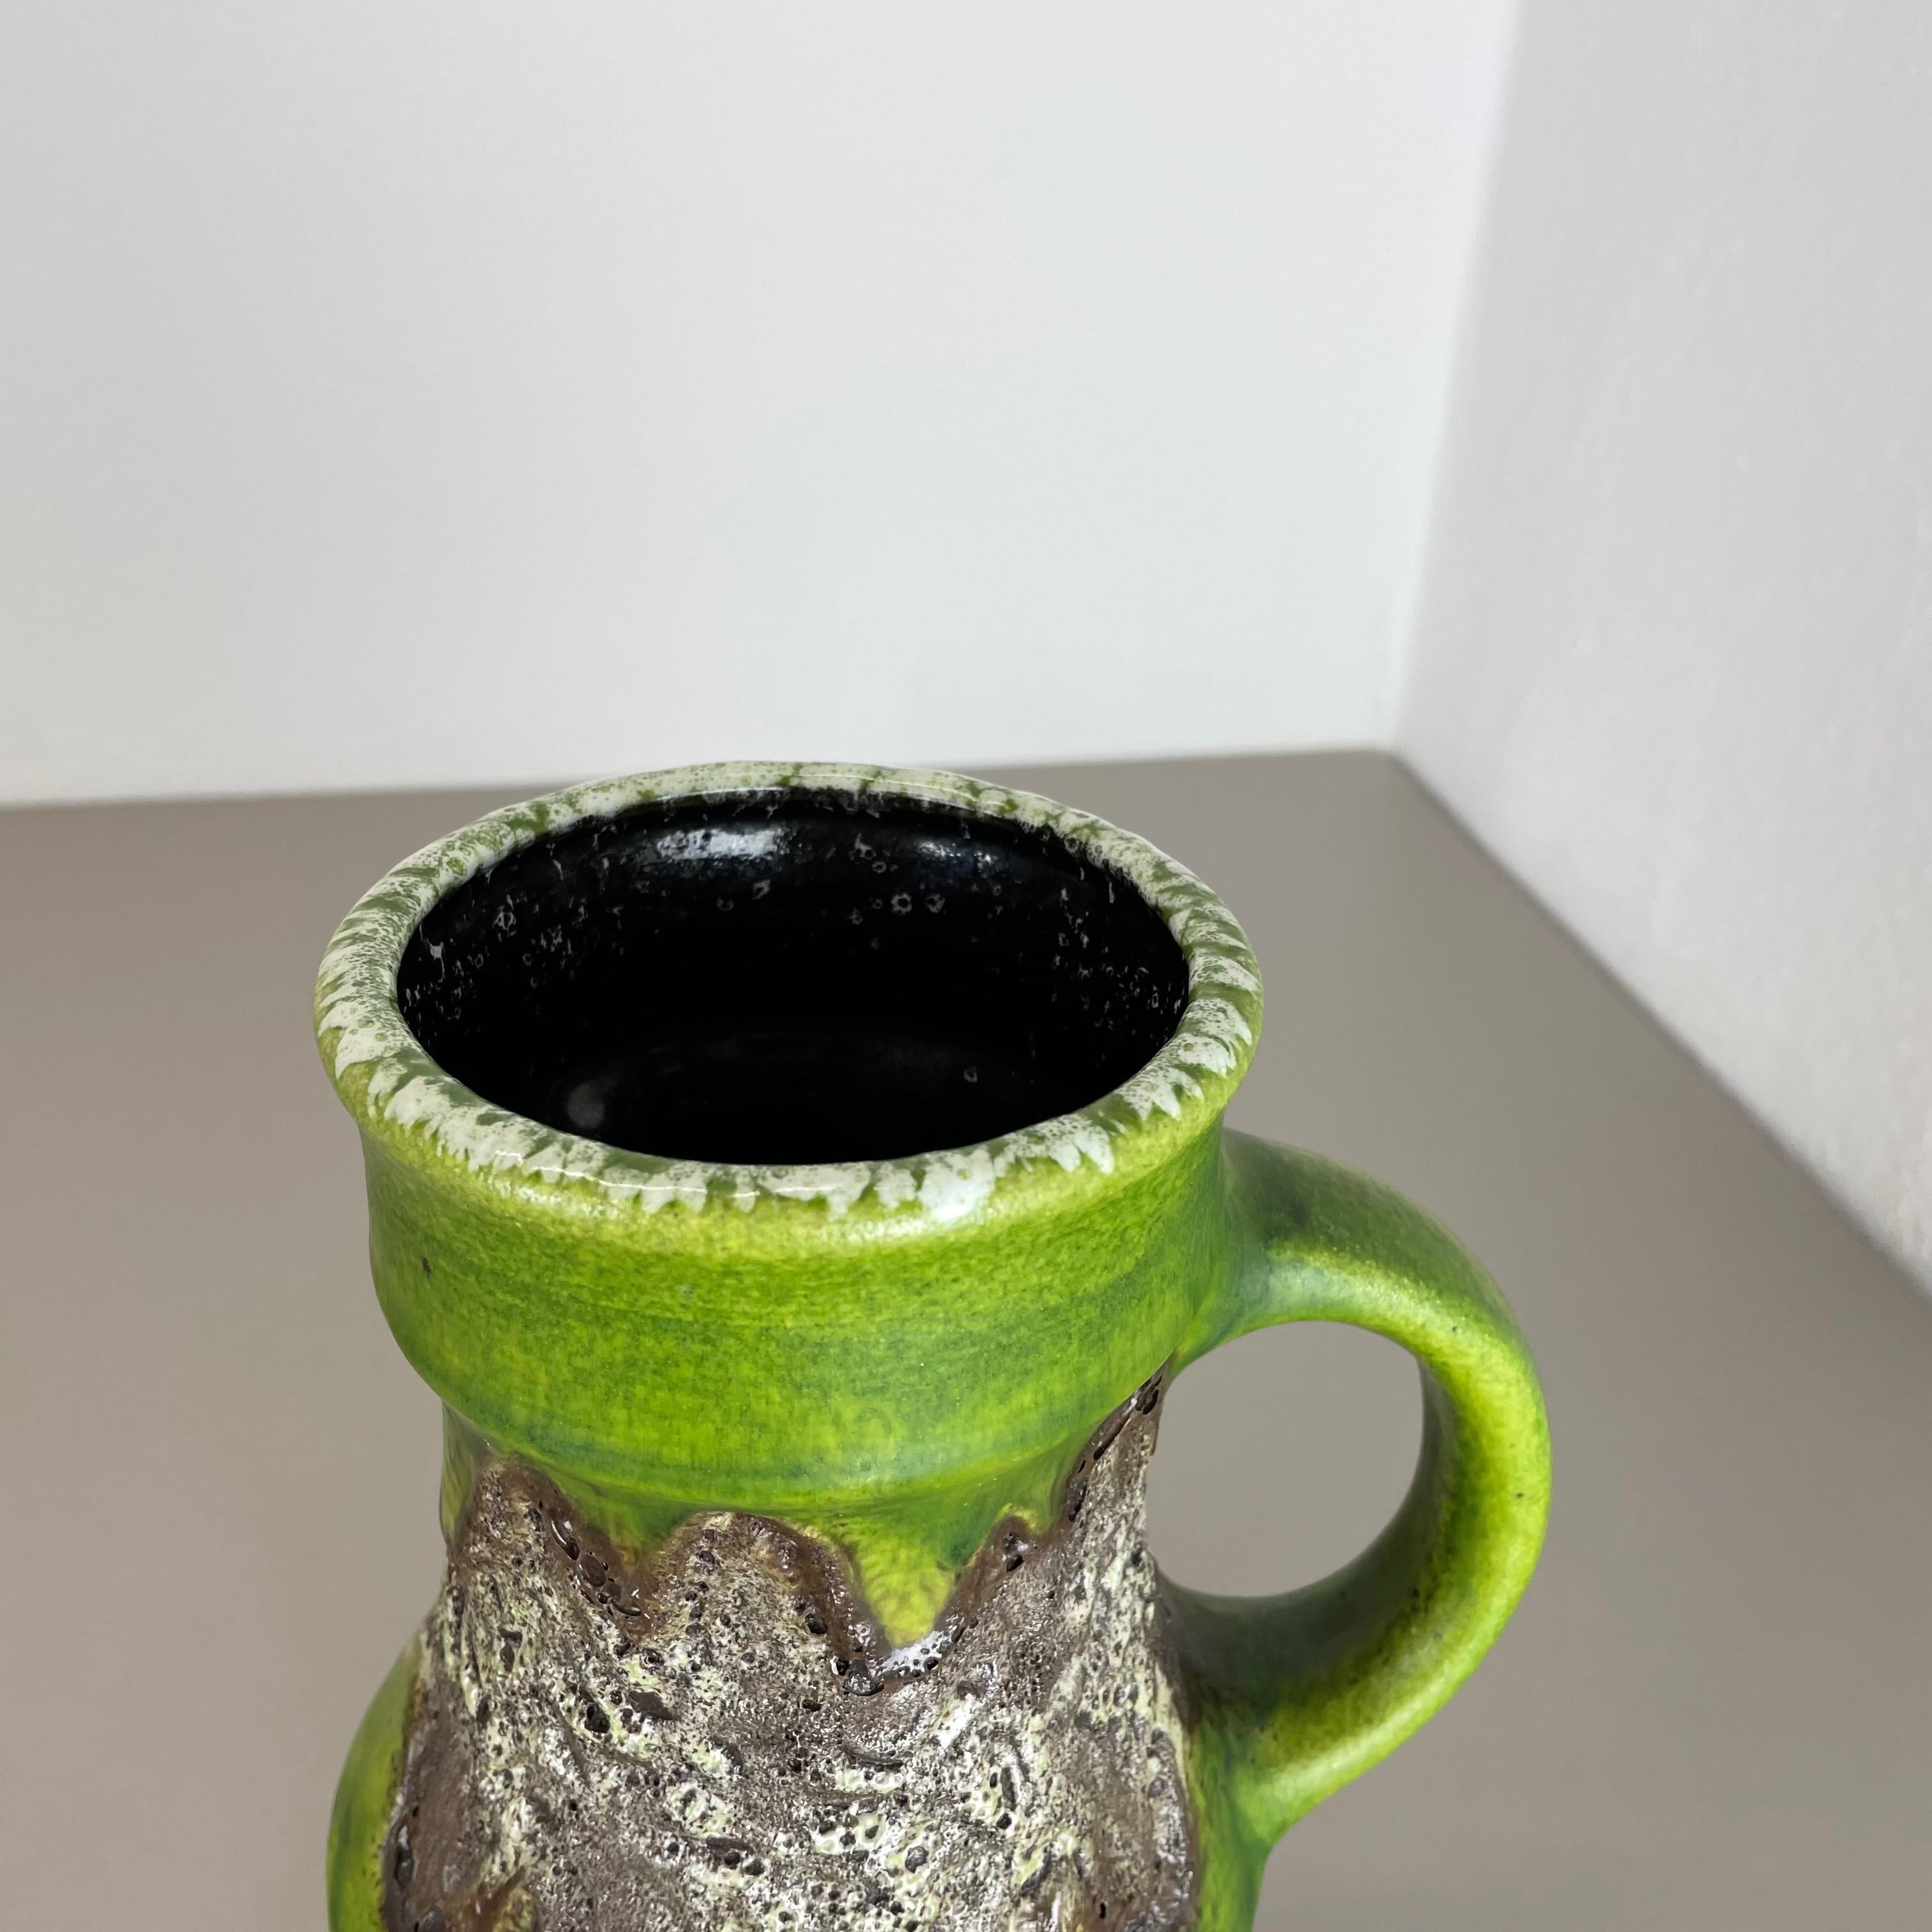 Rare Green Brutalist Fat Lava Ceramic Vases by Dümler and Breiden Germany, 1970s For Sale 1